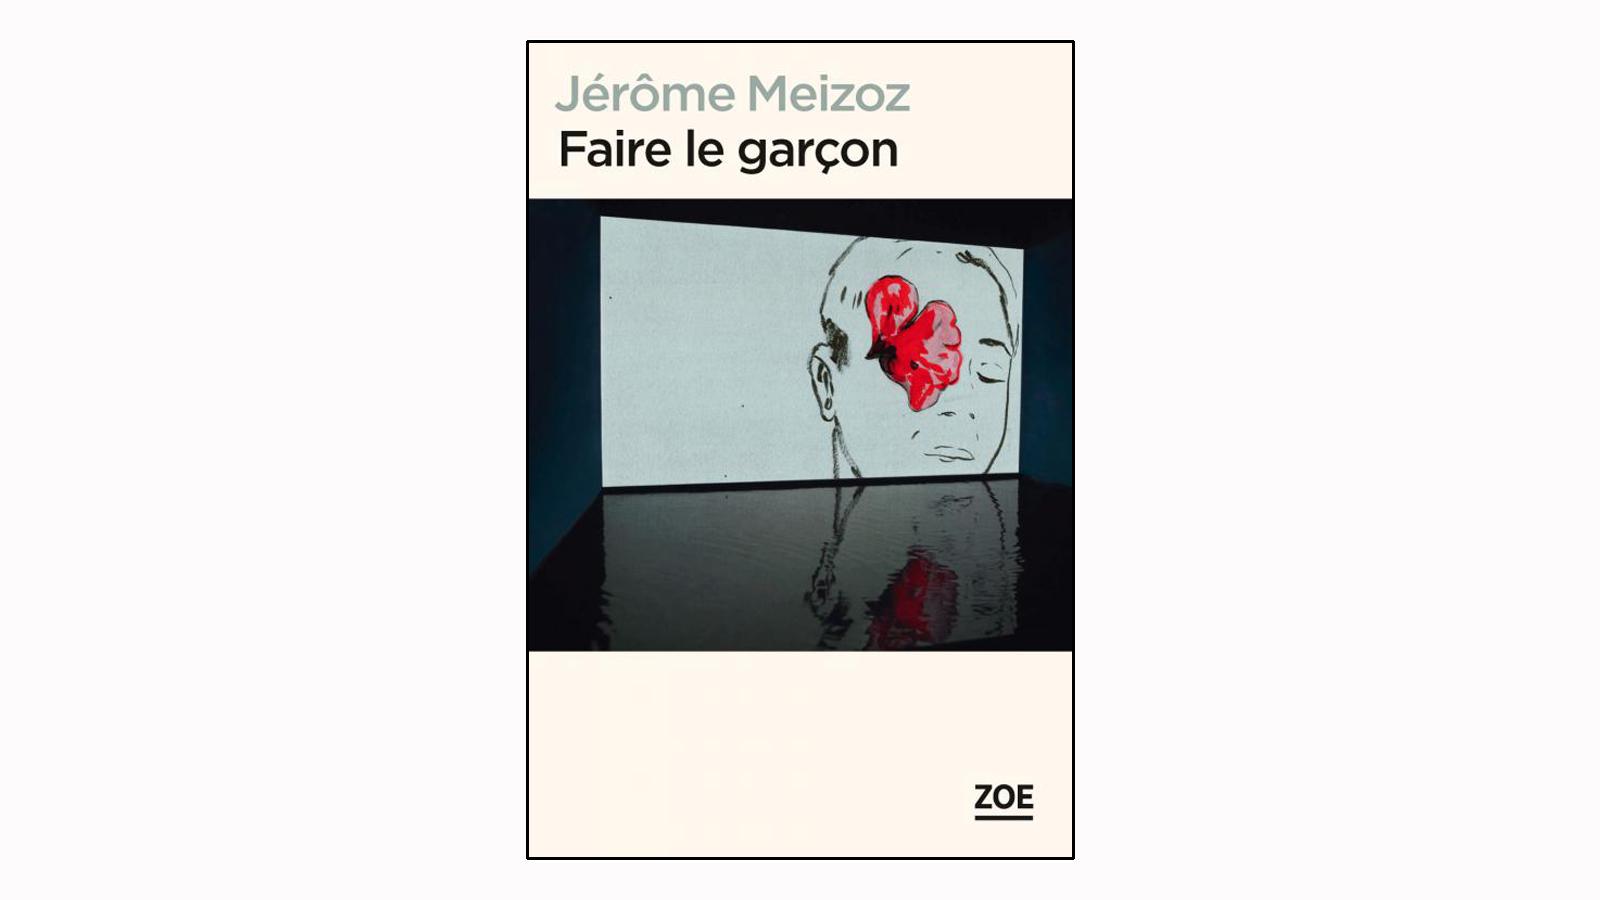 La couverture du livre "Faire le garçon" de Jérôme Meizoz. [Editions Zoé]